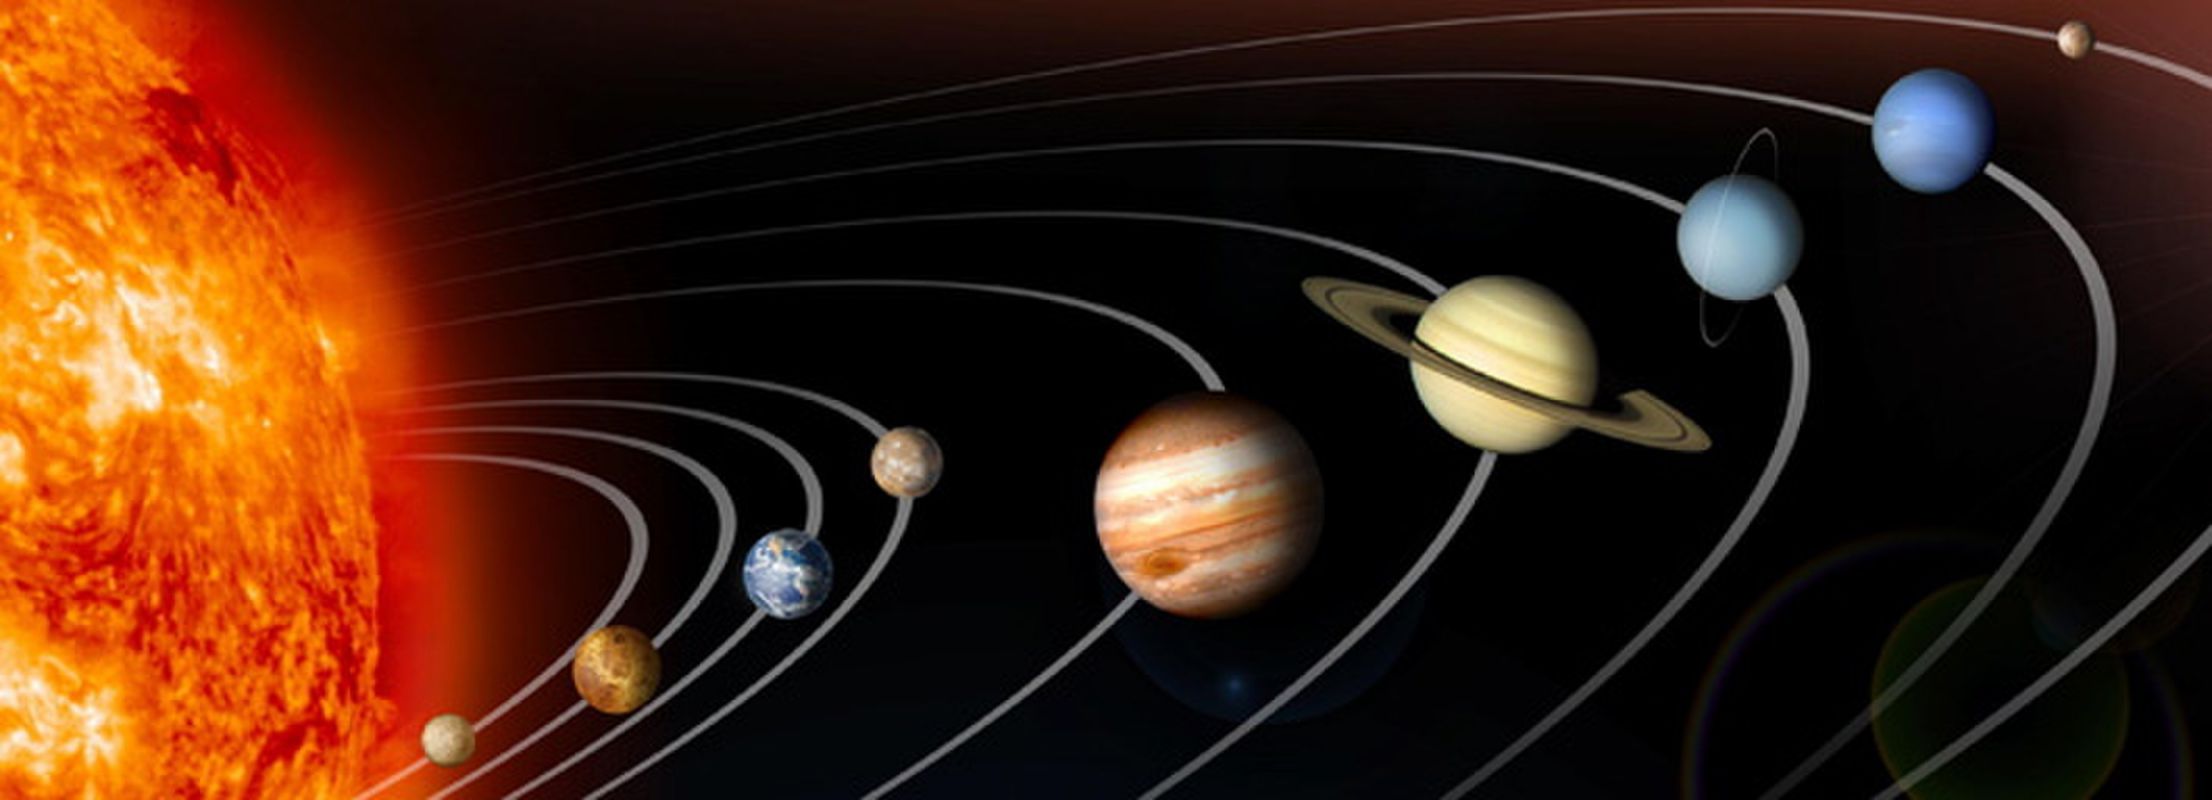 Юпитер — гигантская планета солнечной системы